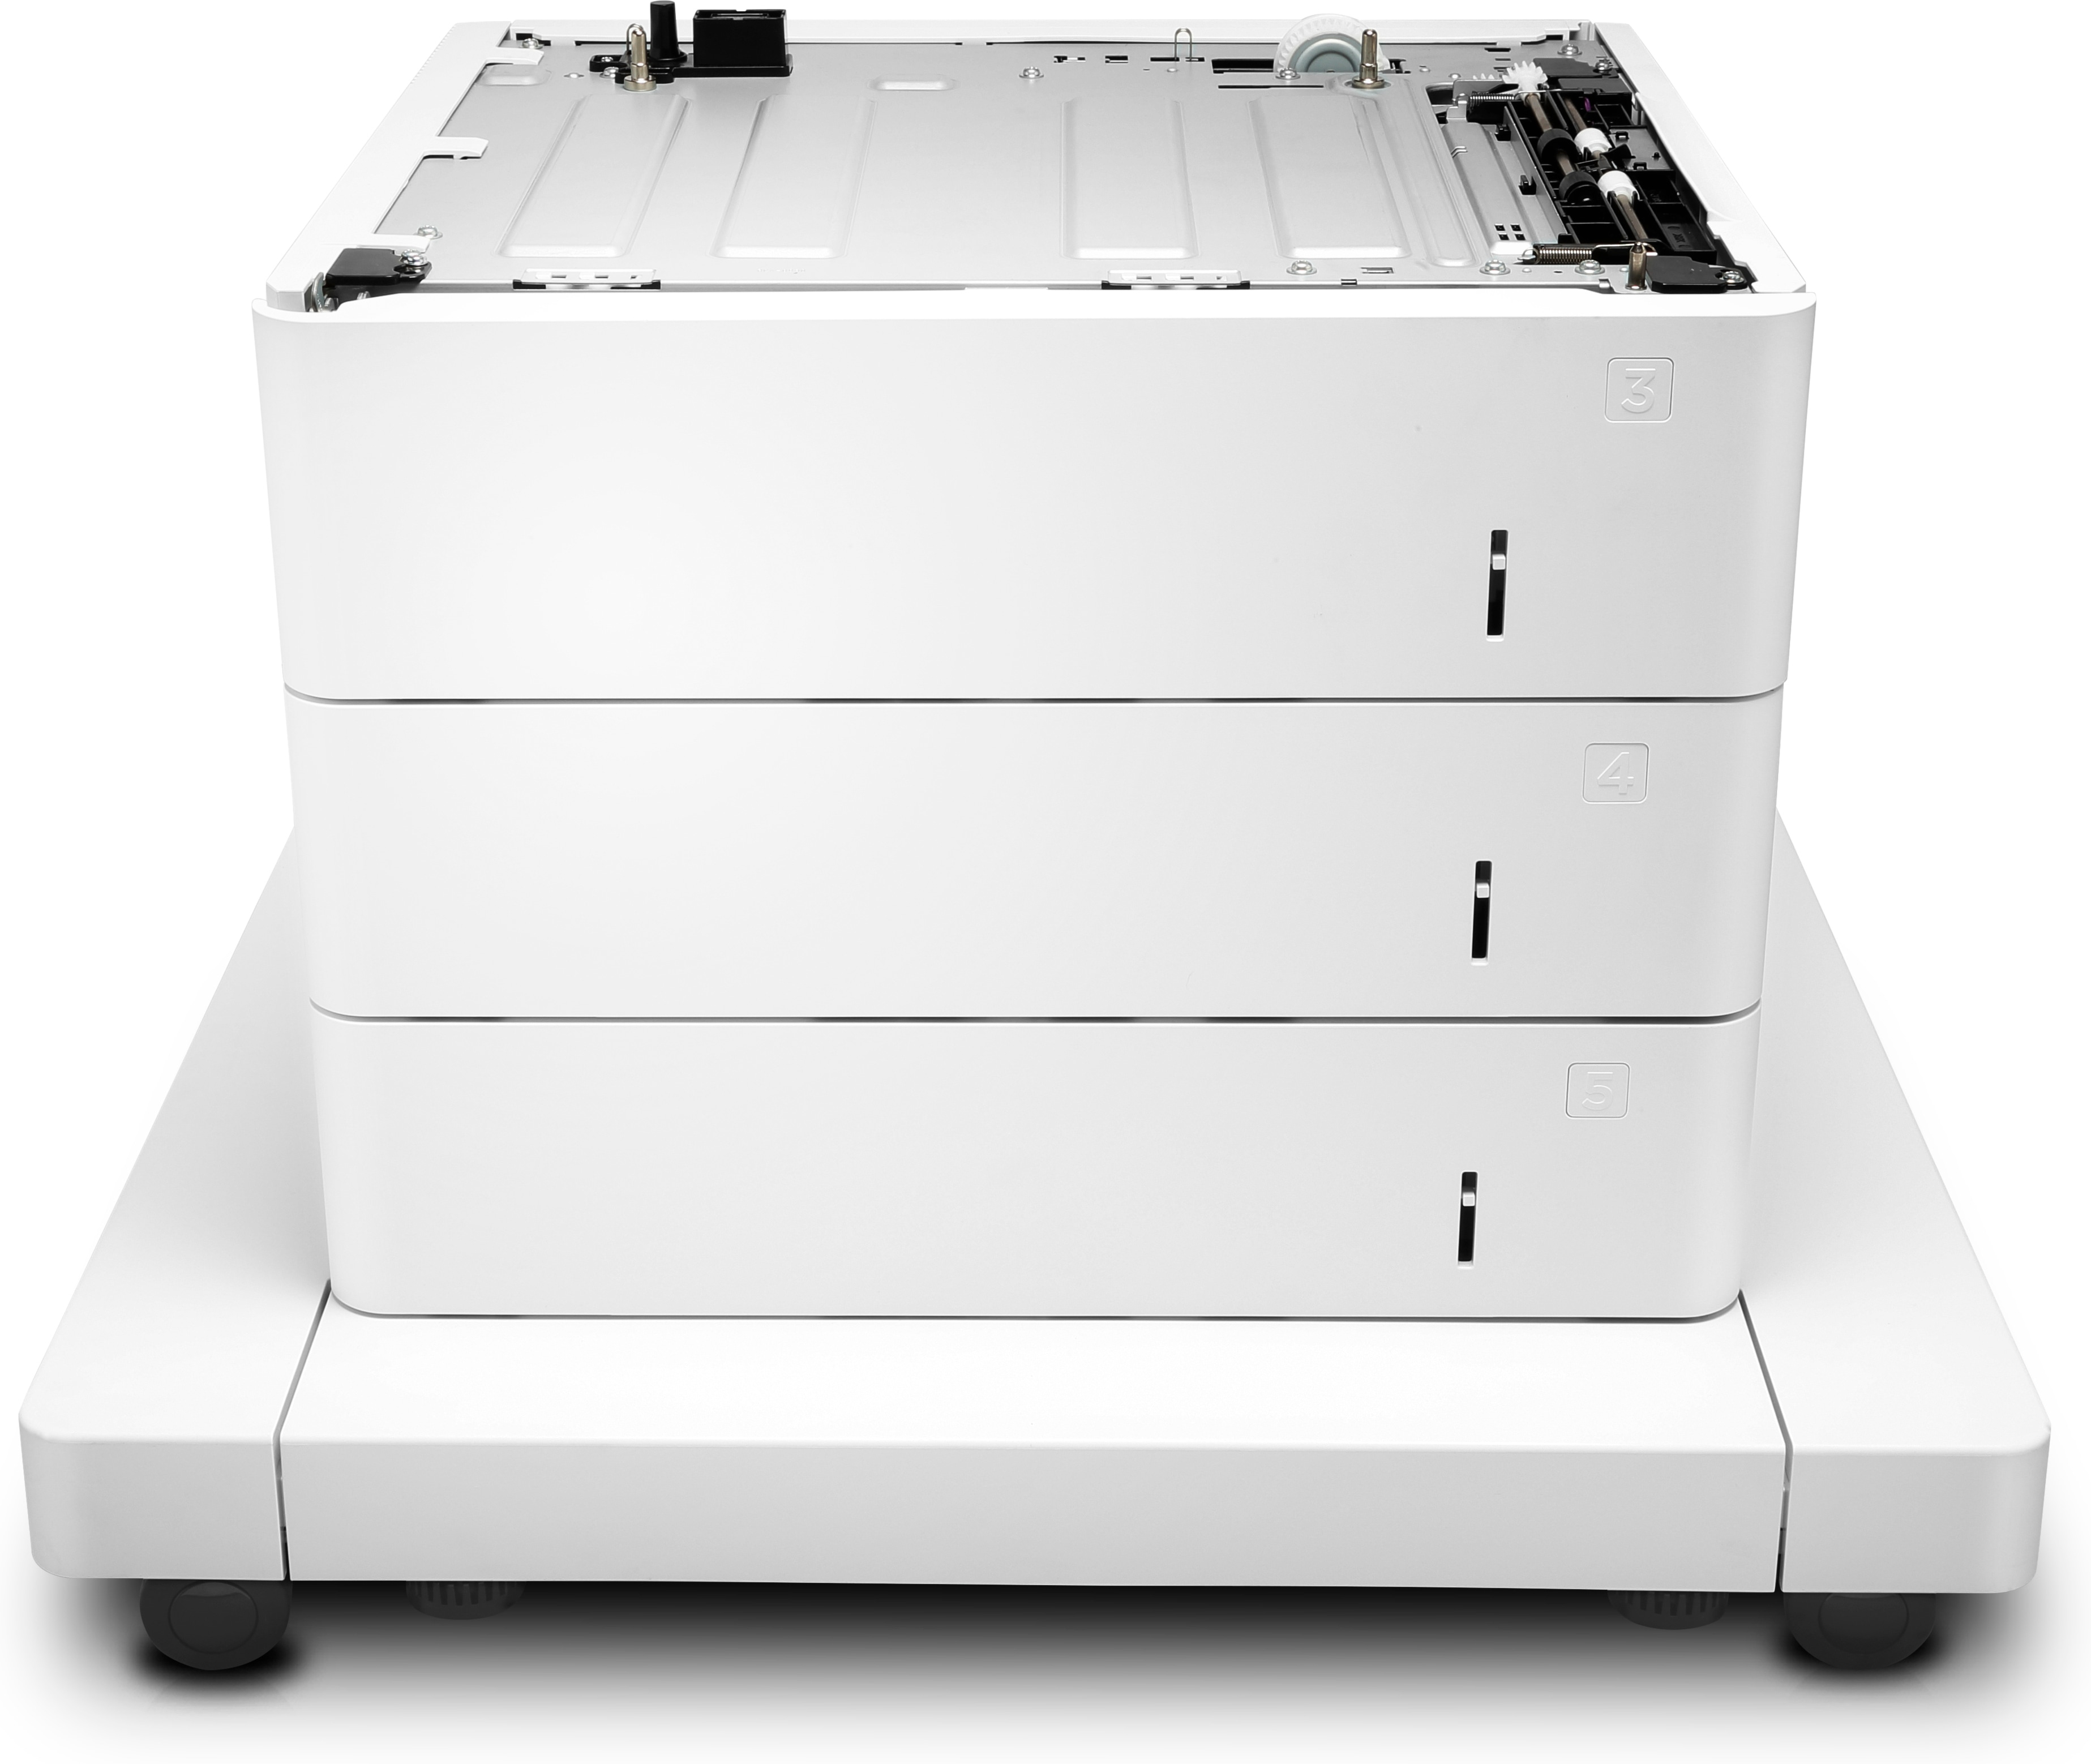 HP Papierzuführung mit Schrank - Druckerbasis mit Medienzuführung - 1650 Blätter in 3 Schubladen (Trays)